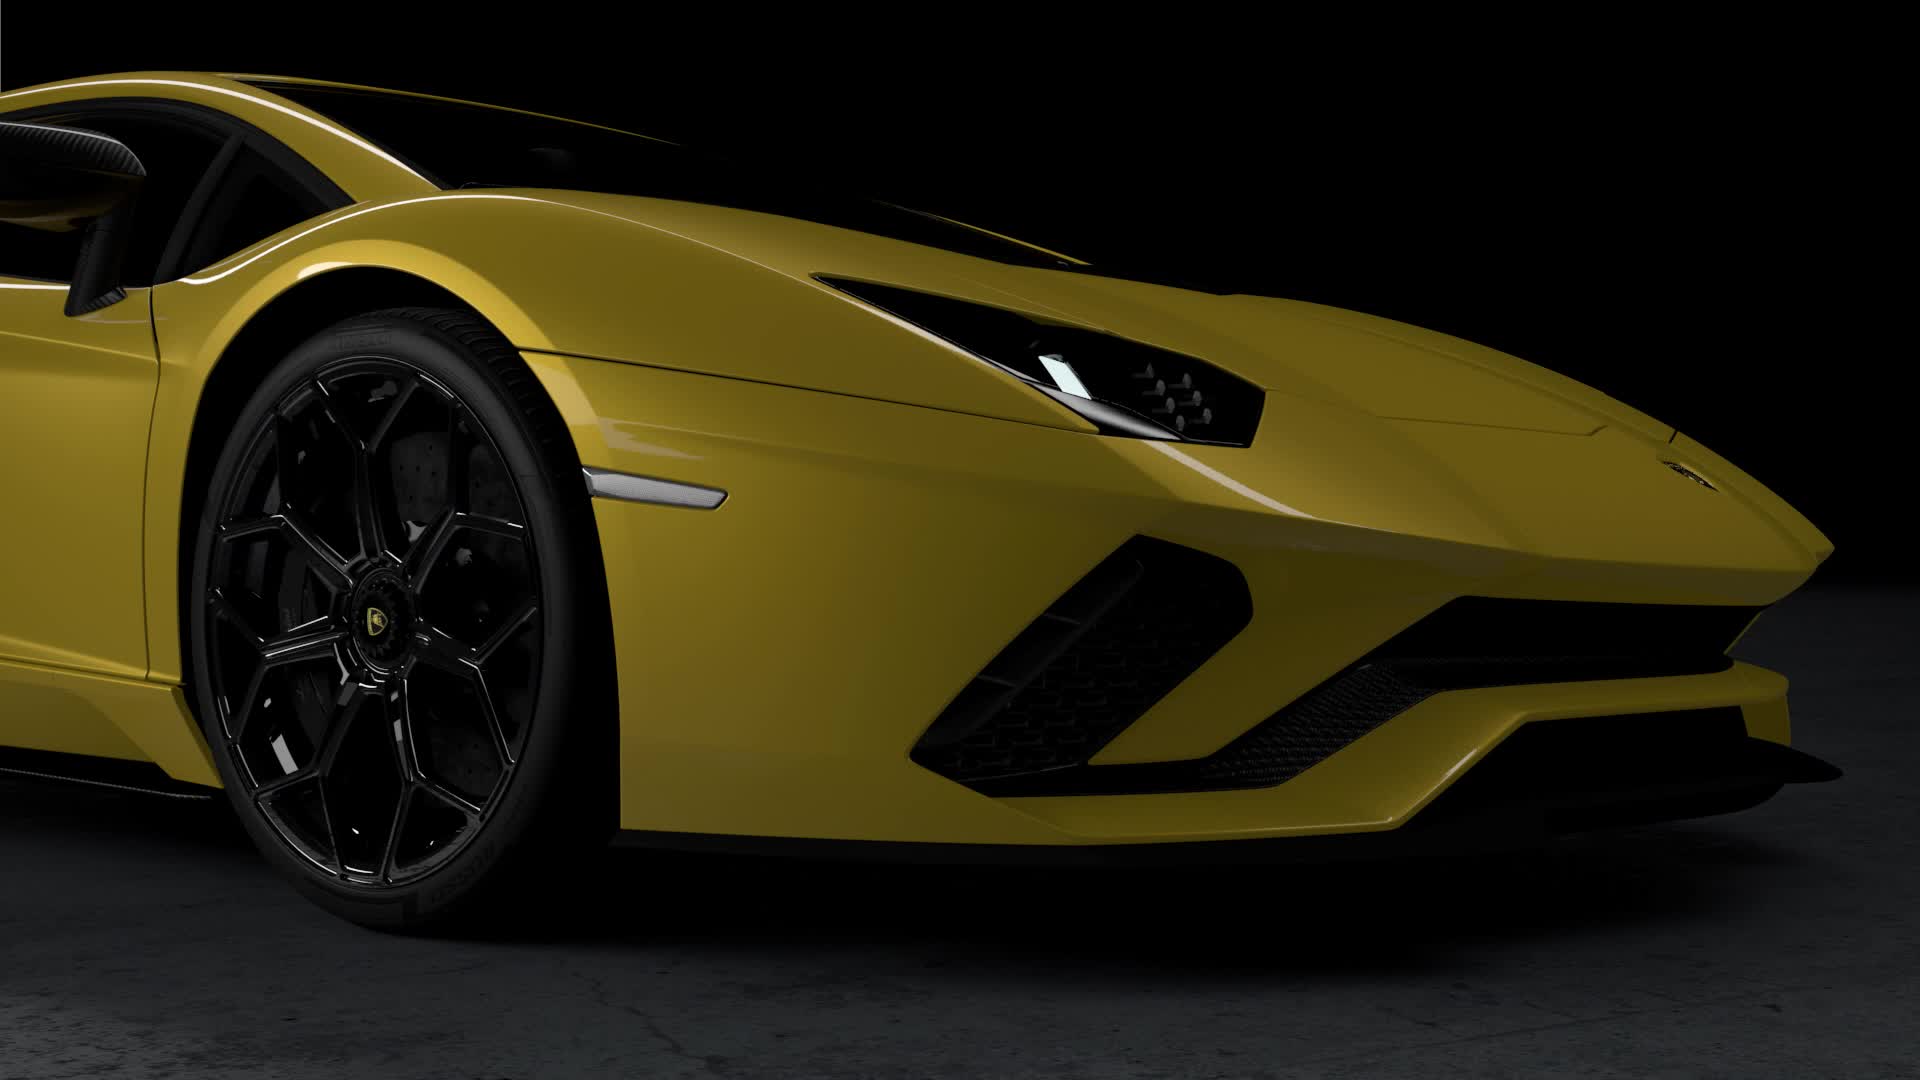 Lamborghini Ke - yellow lambo Wallpaper Download | MobCup